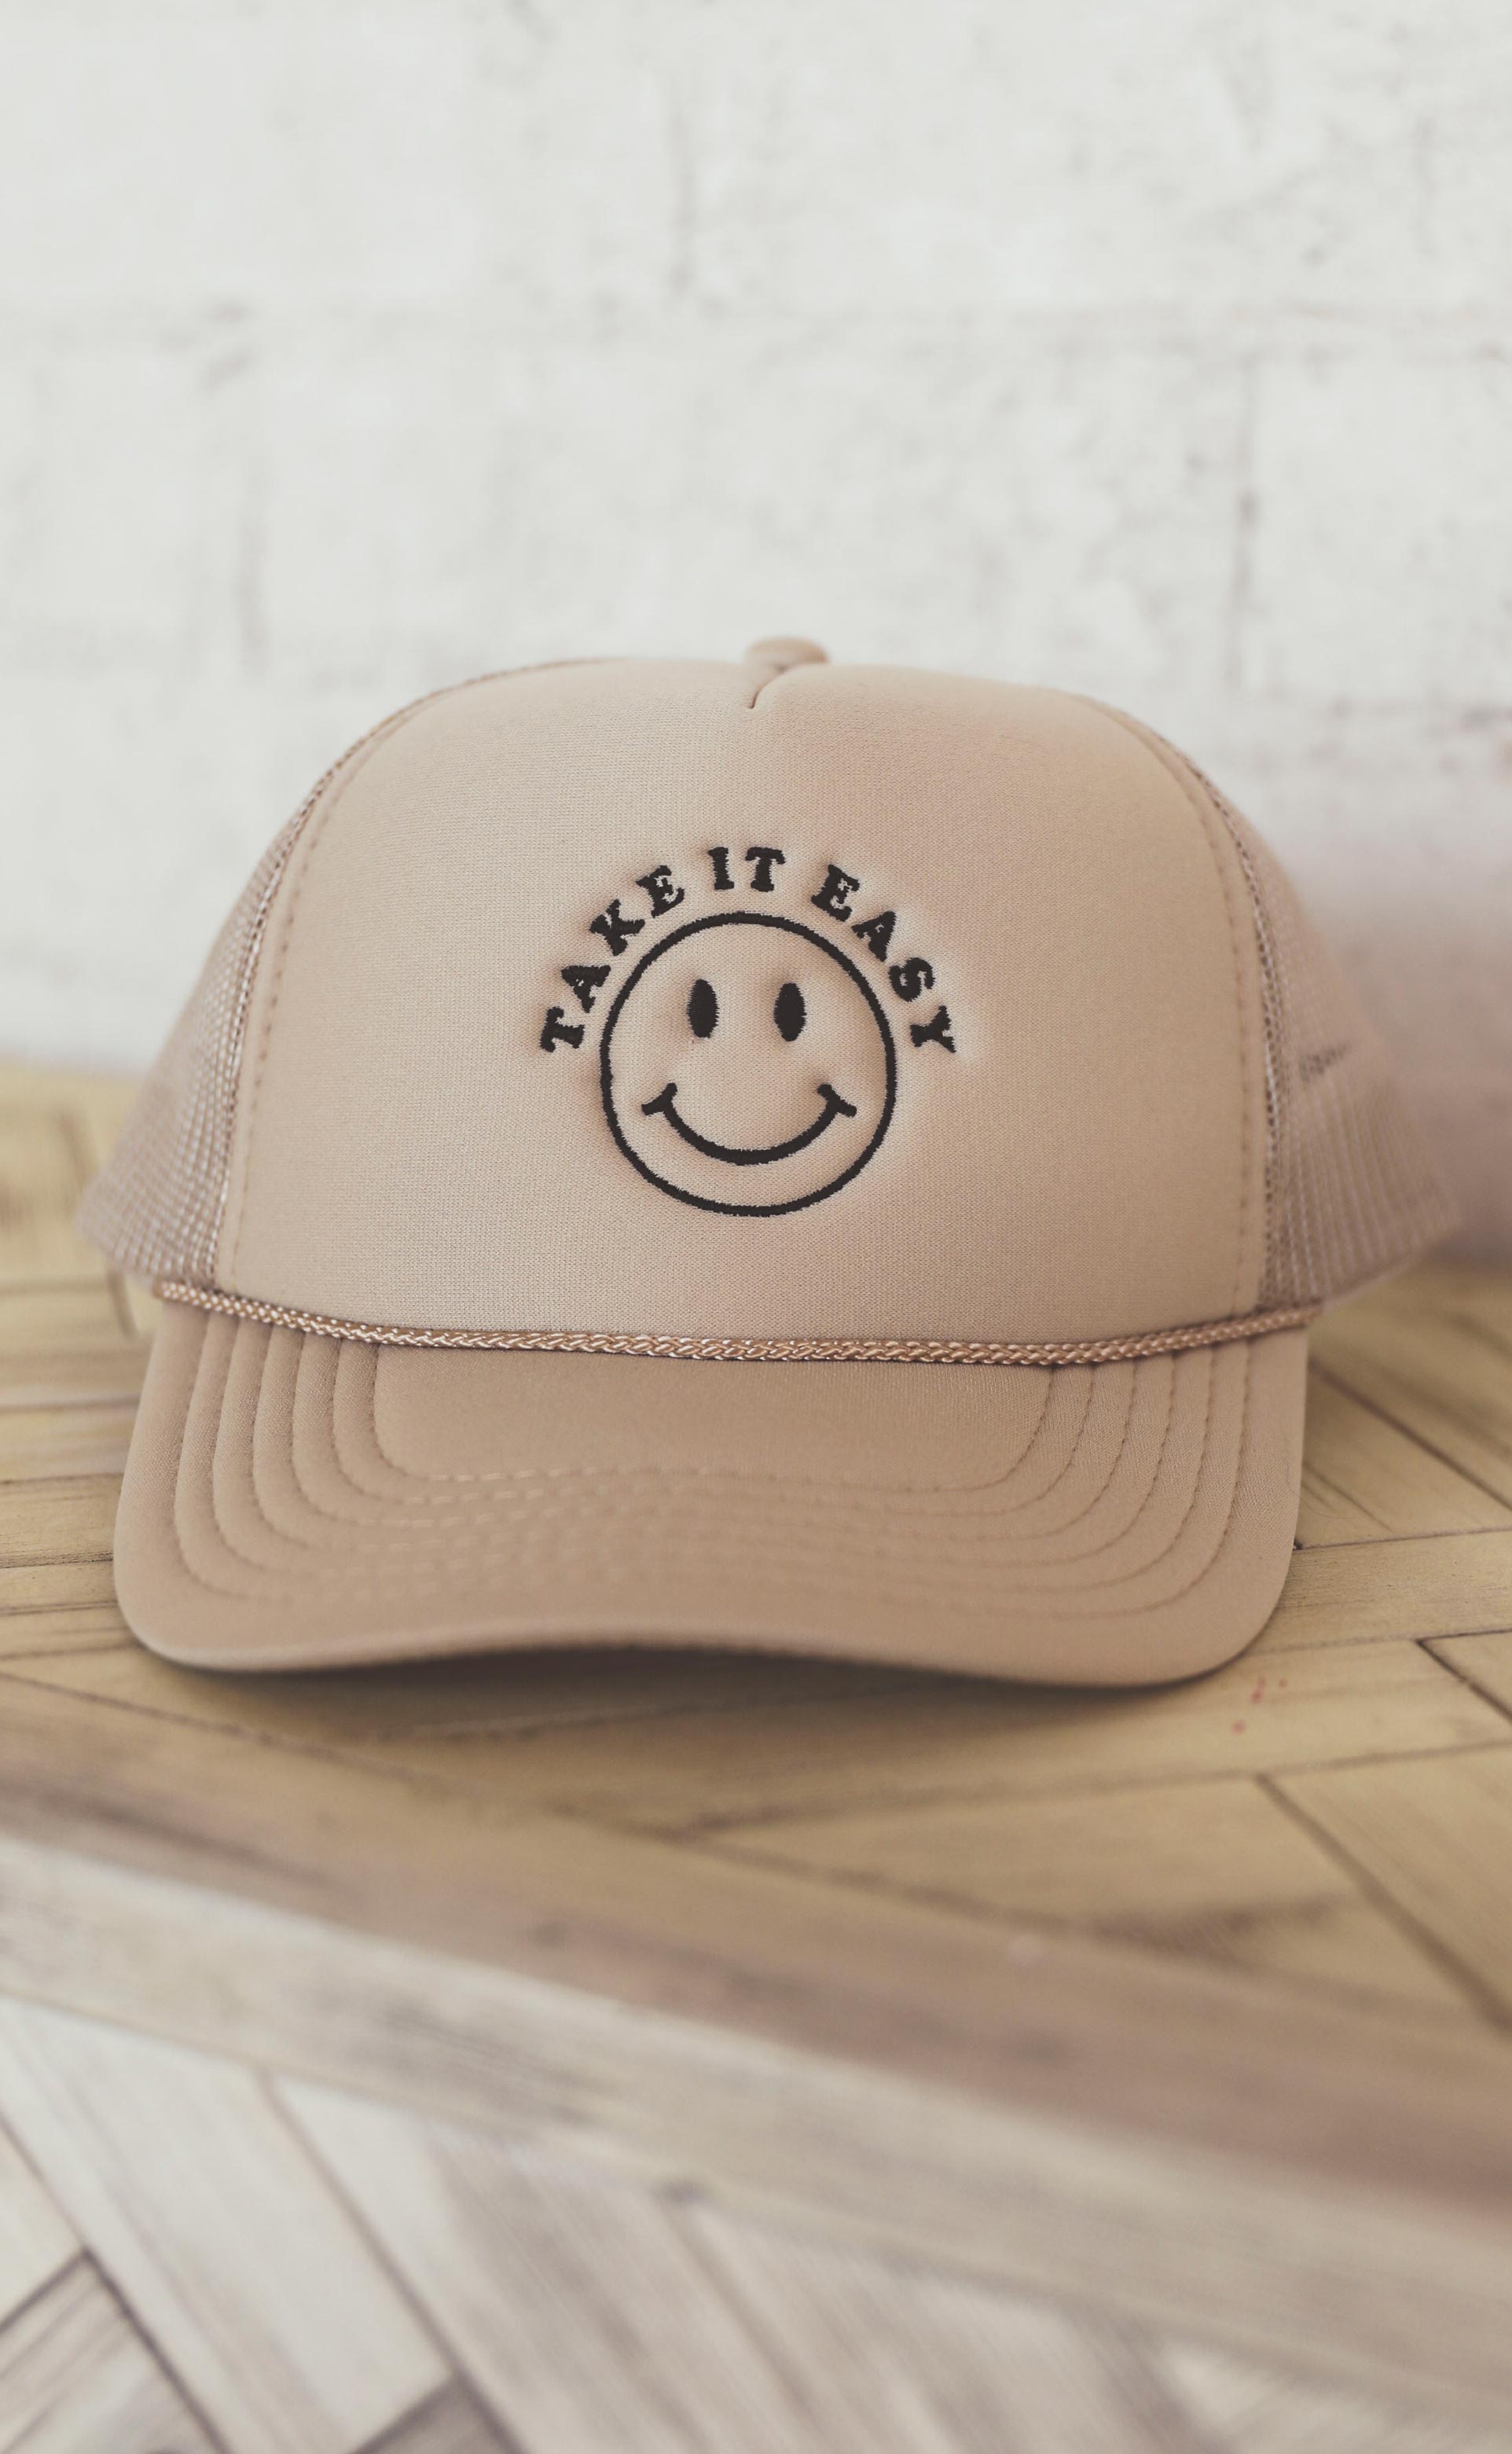 friday + saturday: take it easy Riffraff – hat trucker